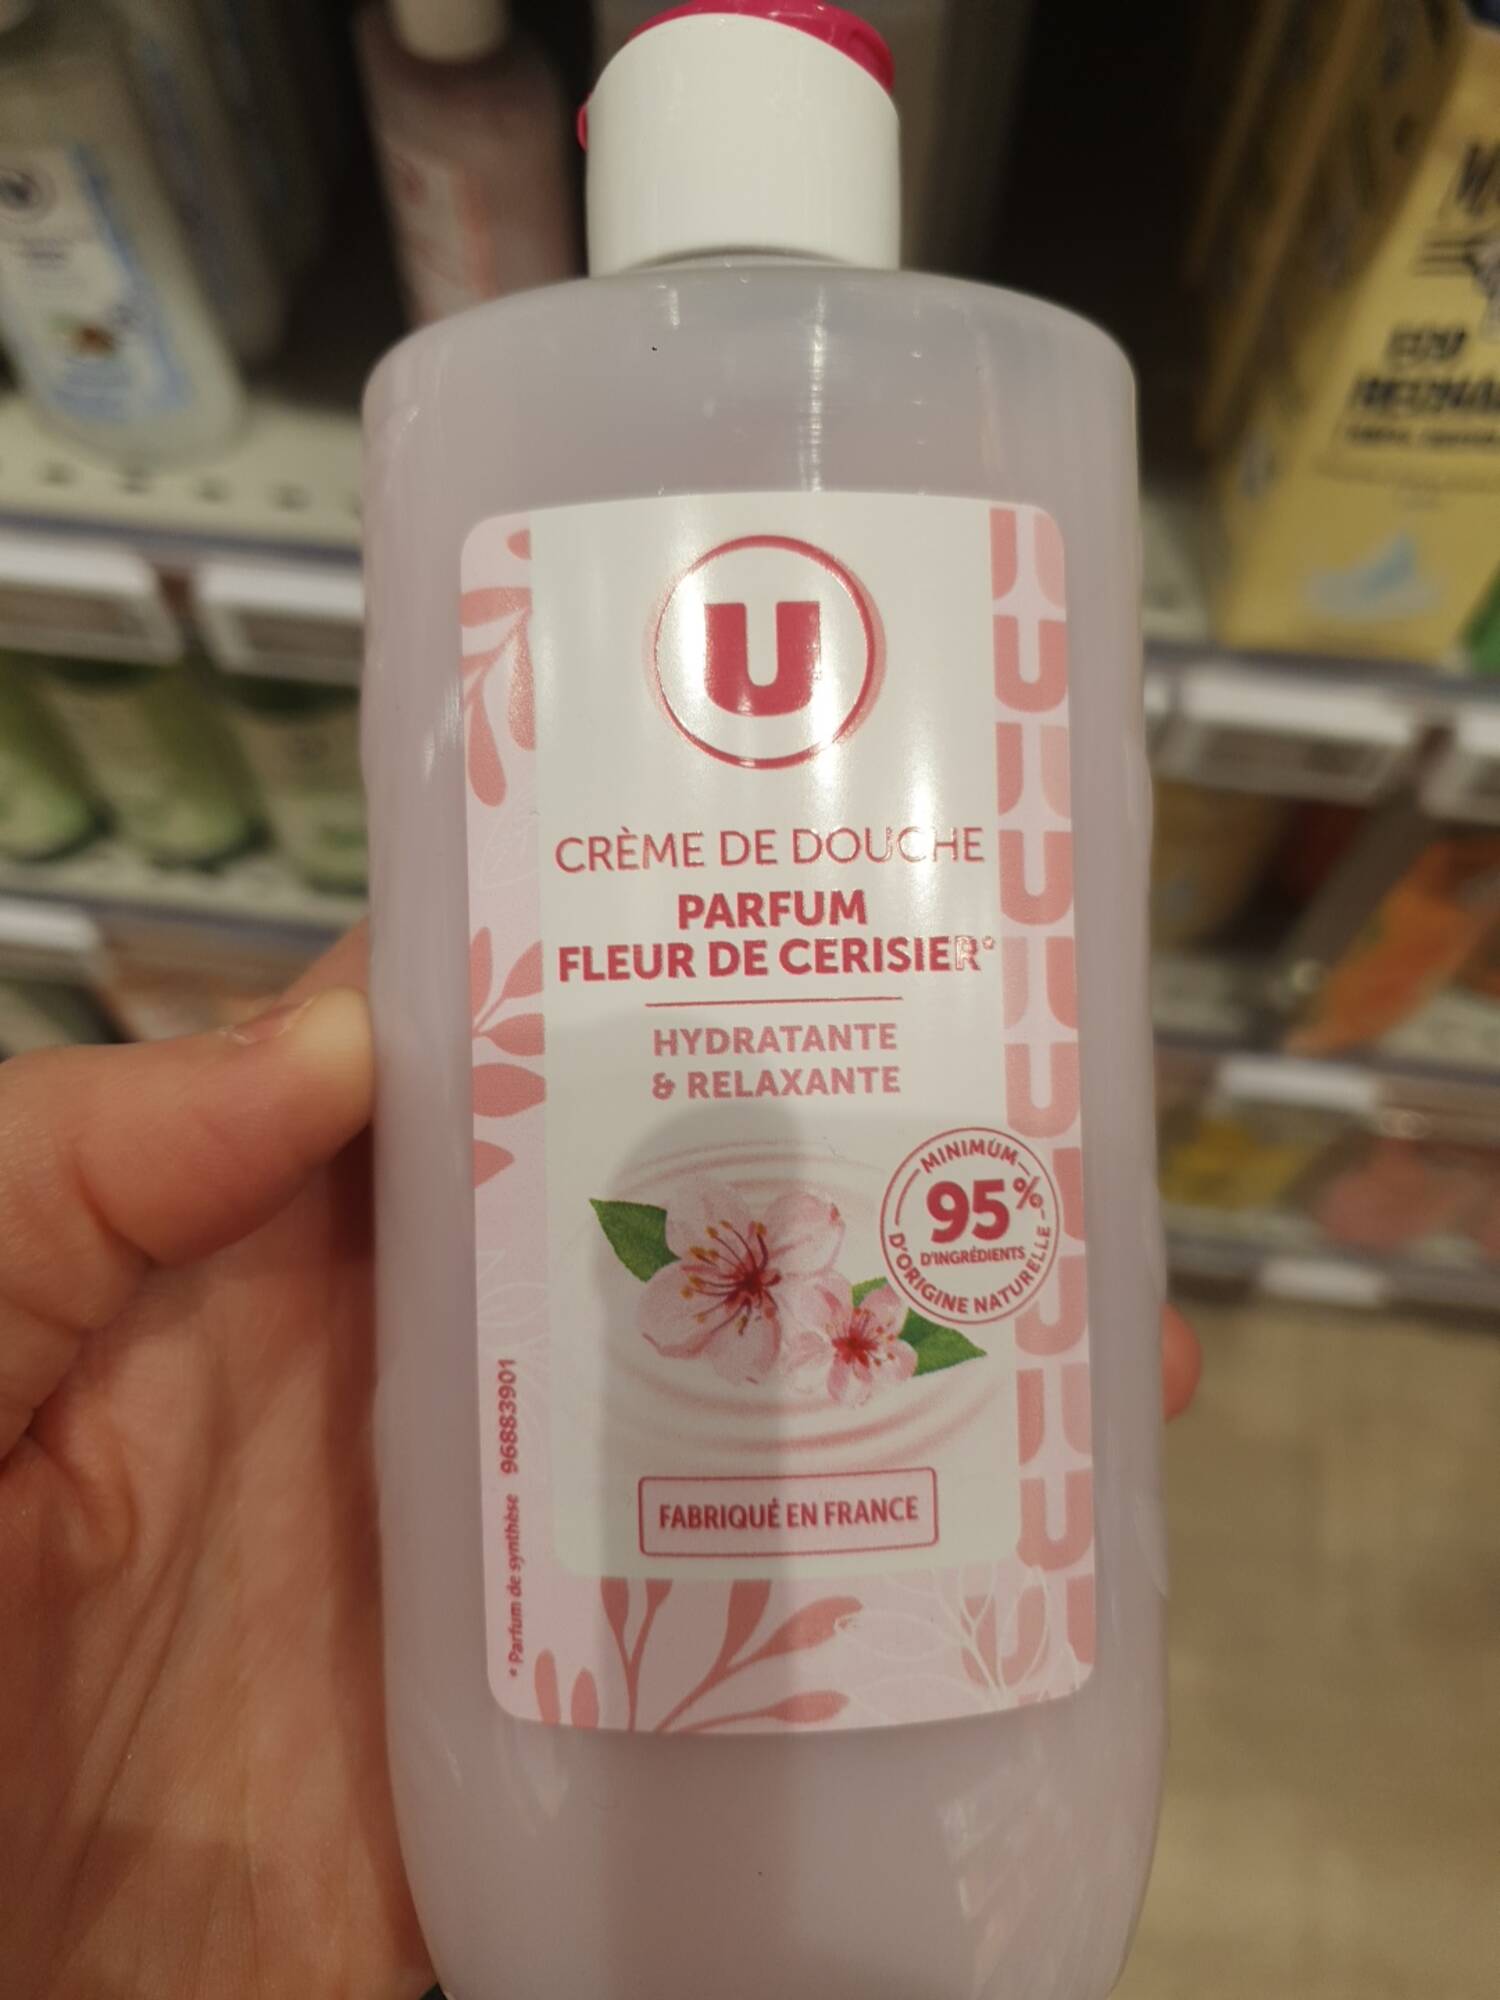 BY U - Crème de douche parfum fleur de cerisier